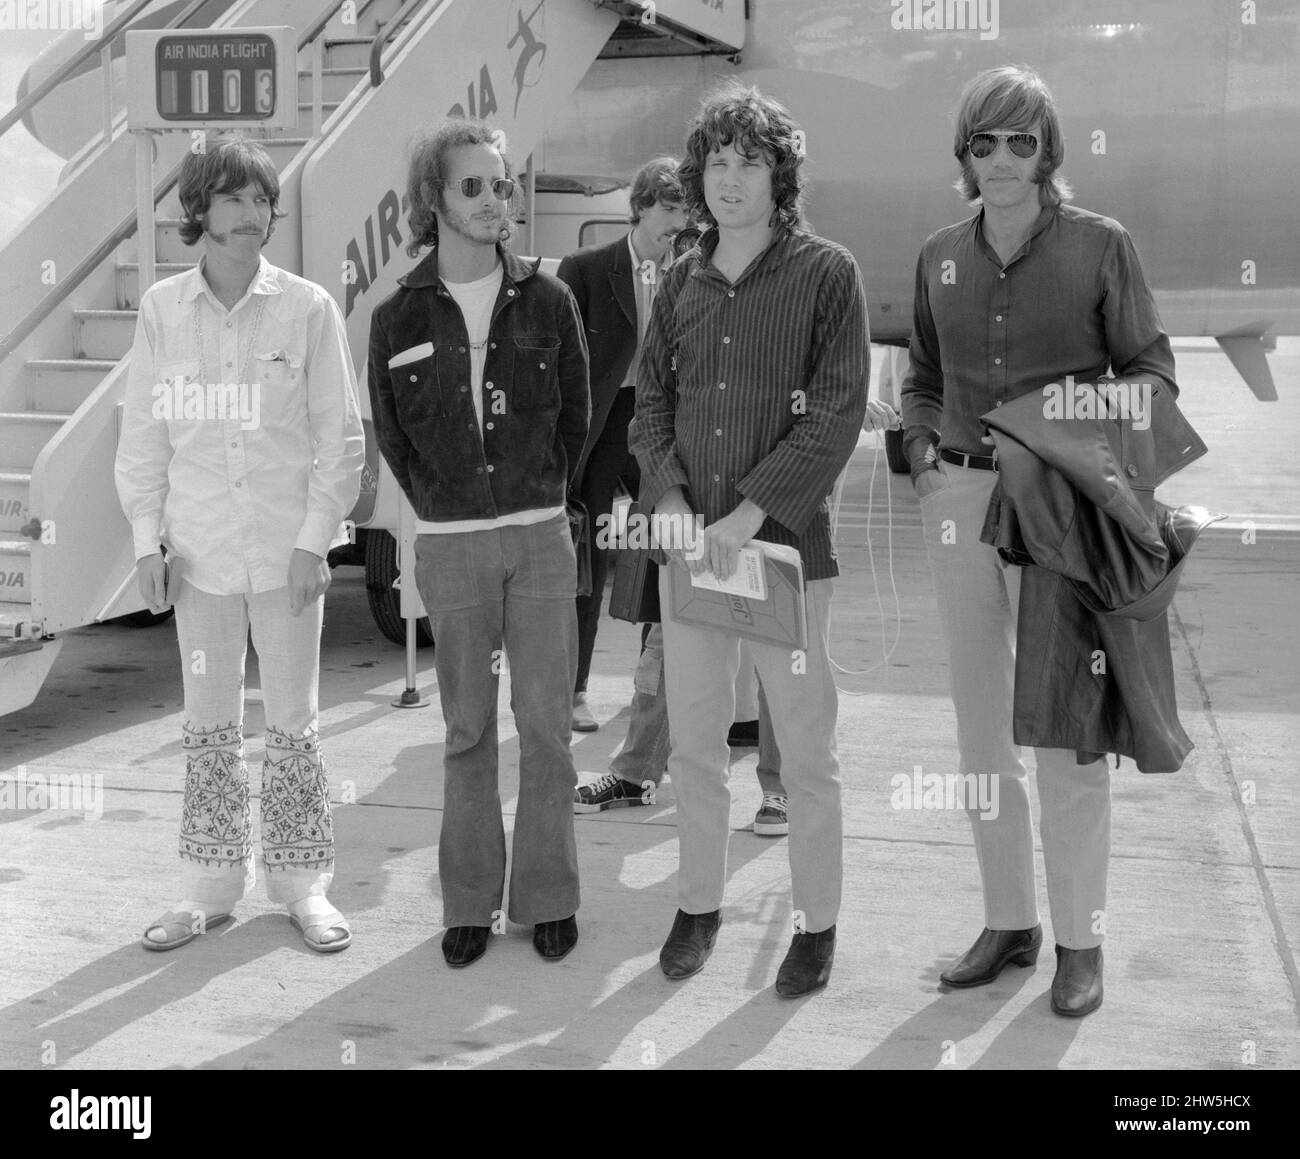 Il gruppo rock americano The Doors arriva all'aeroporto Heathrow di Londra. Sono da sinistra a destra: Il batterista John Densmore, il chitarrista Robbie Krieger, il cantante Jim Morrison e il tastierista Ray Manzarek. 3rd settembre 1968. Foto Stock